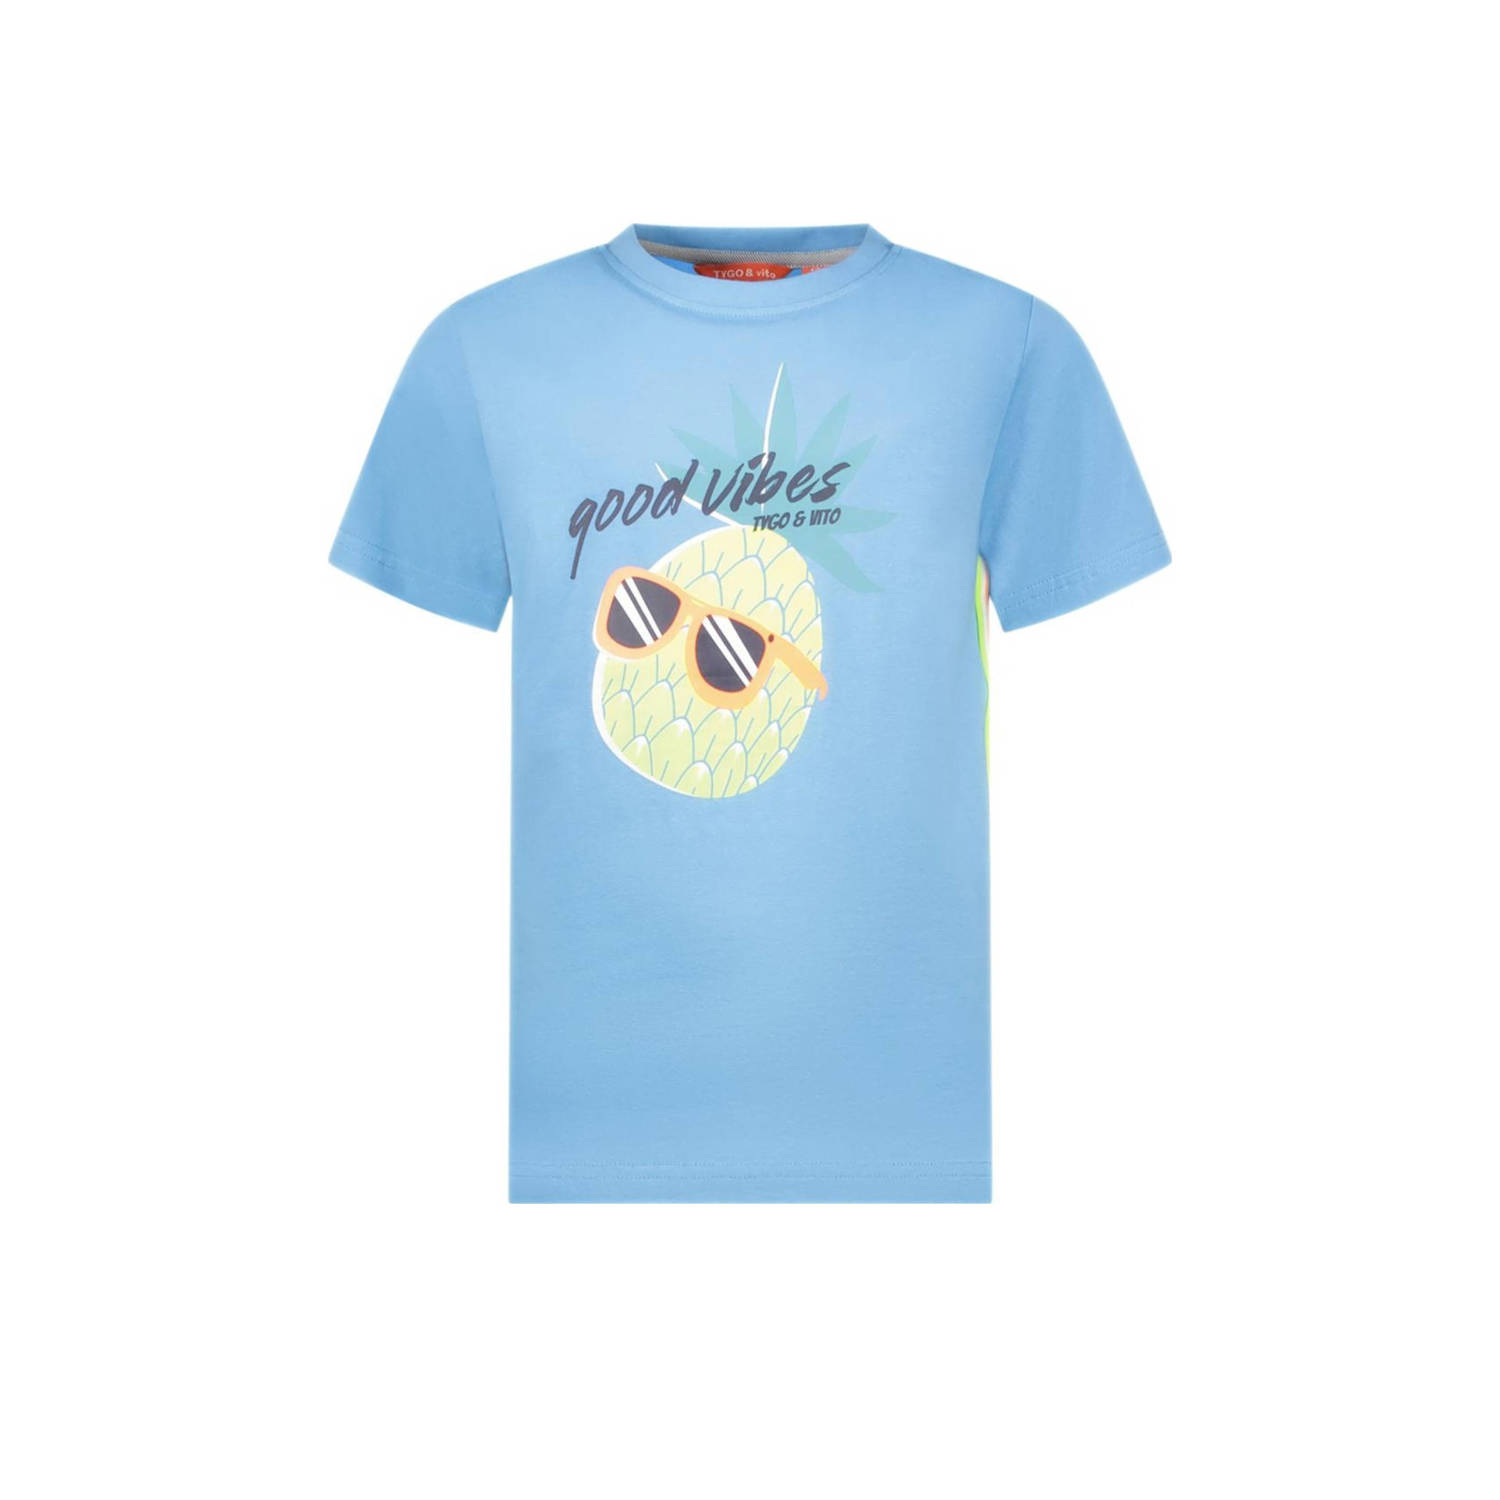 TYGO & vito T-shirt Wessel met contrastbies helderblauw Jongens Stretchkatoen Ronde hals 122 128